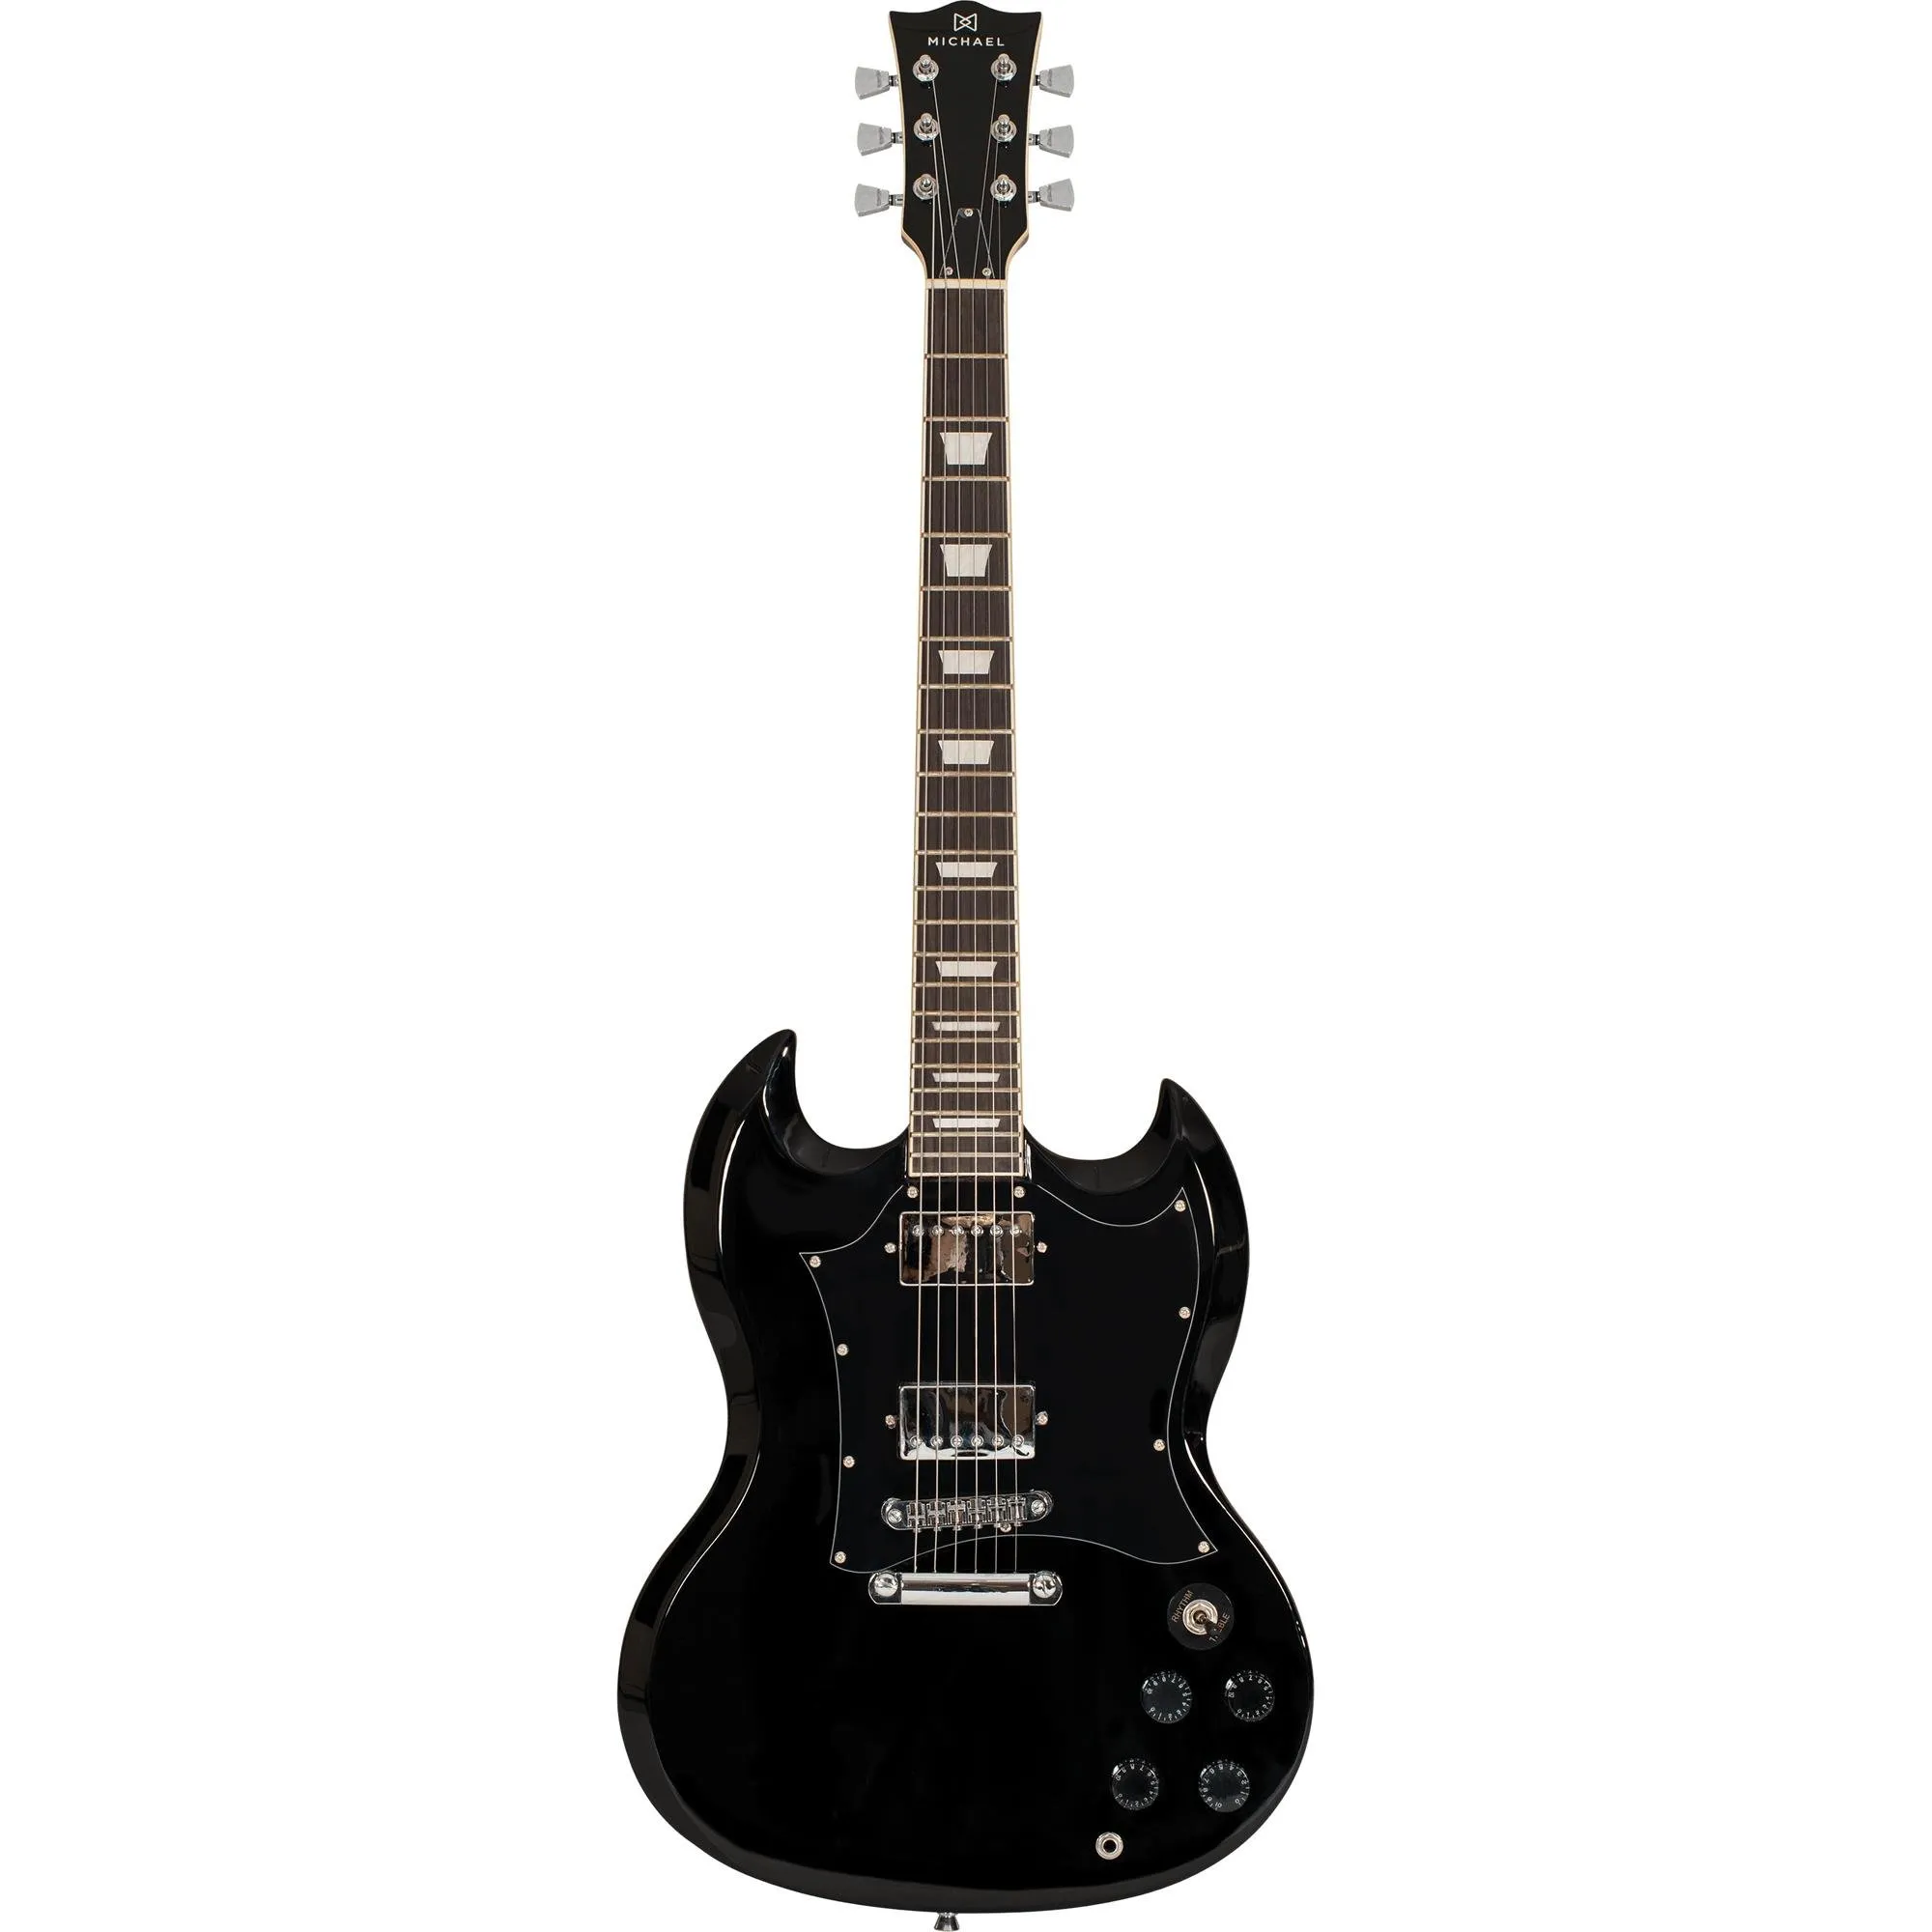 Guitarra Michael SG Hammer GM850N Preta por 2.499,99 à vista no boleto/pix ou parcele em até 12x sem juros. Compre na loja Mundomax!